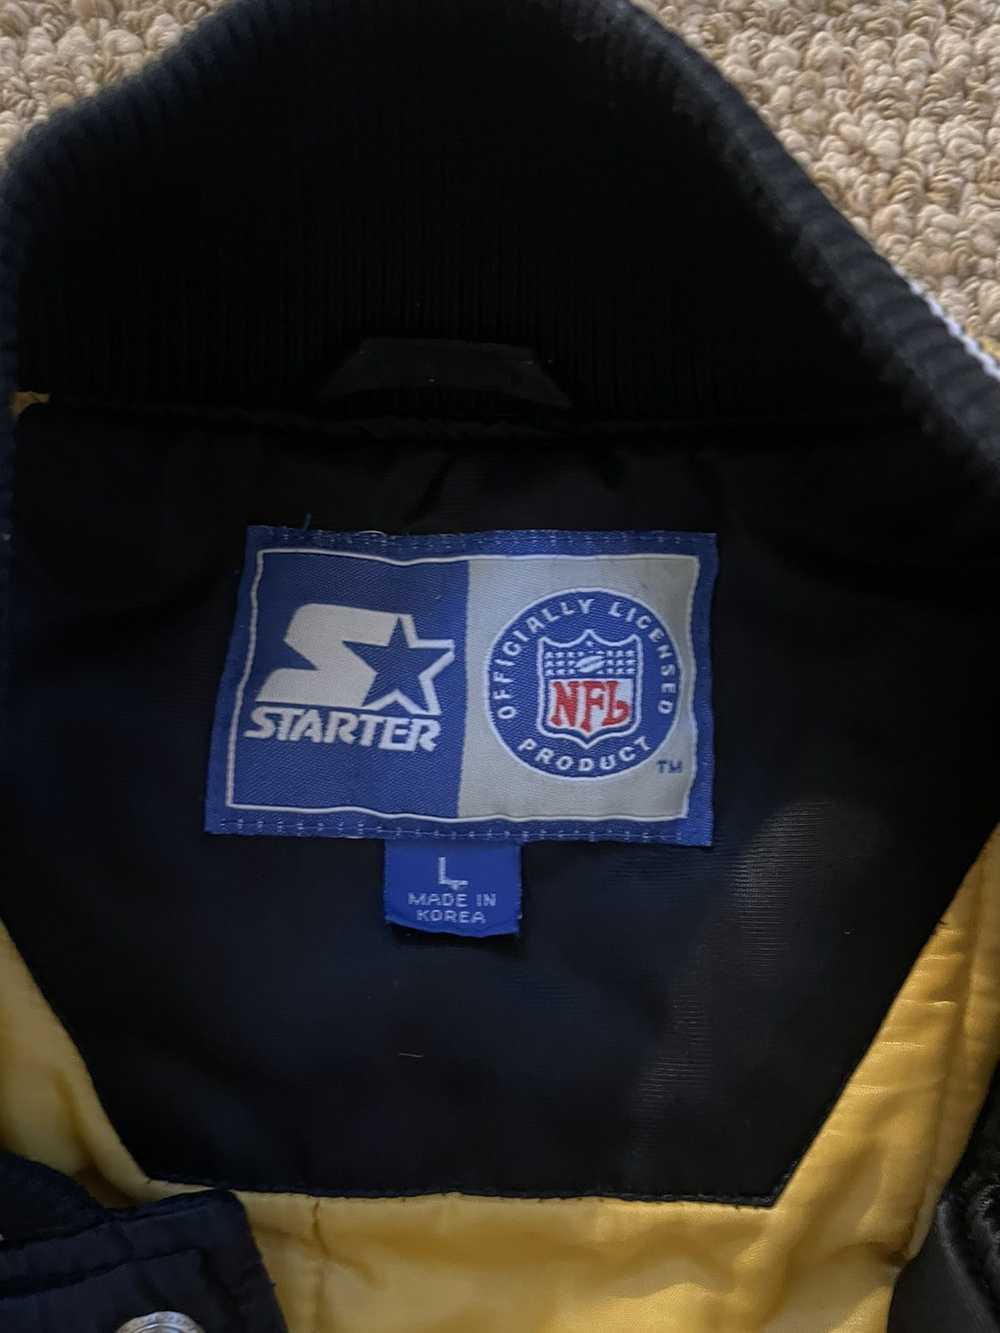 NFL × Starter × Vintage Starter Steelers Jacket - image 2